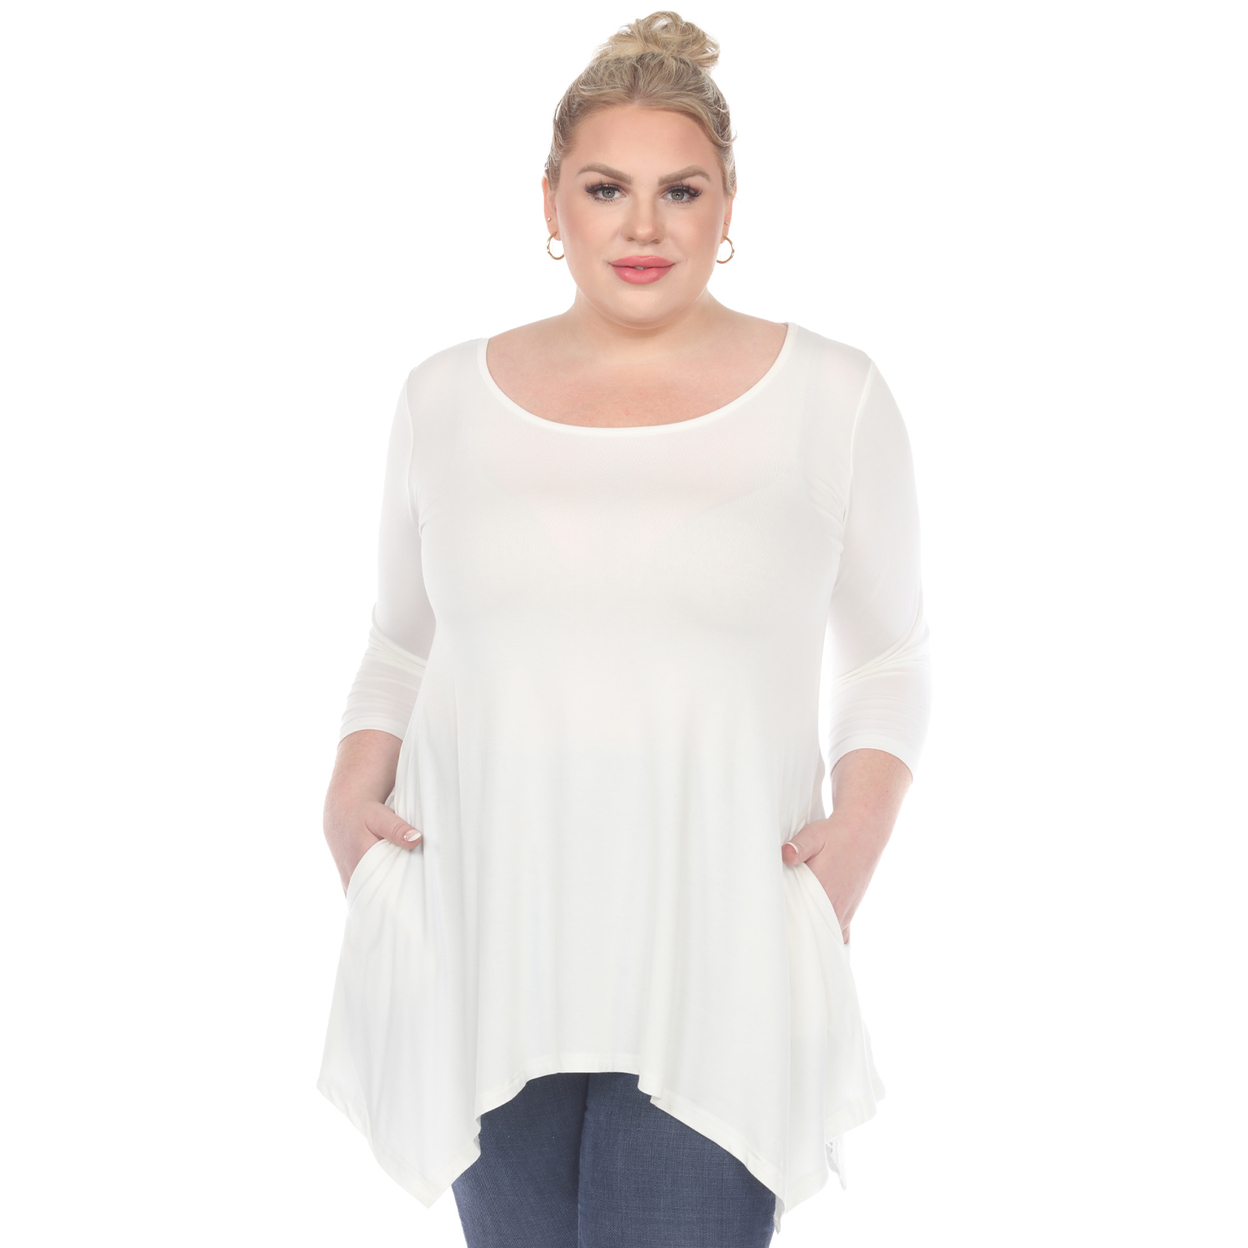 Plus Size Makayla Tunic Top - White | eBay